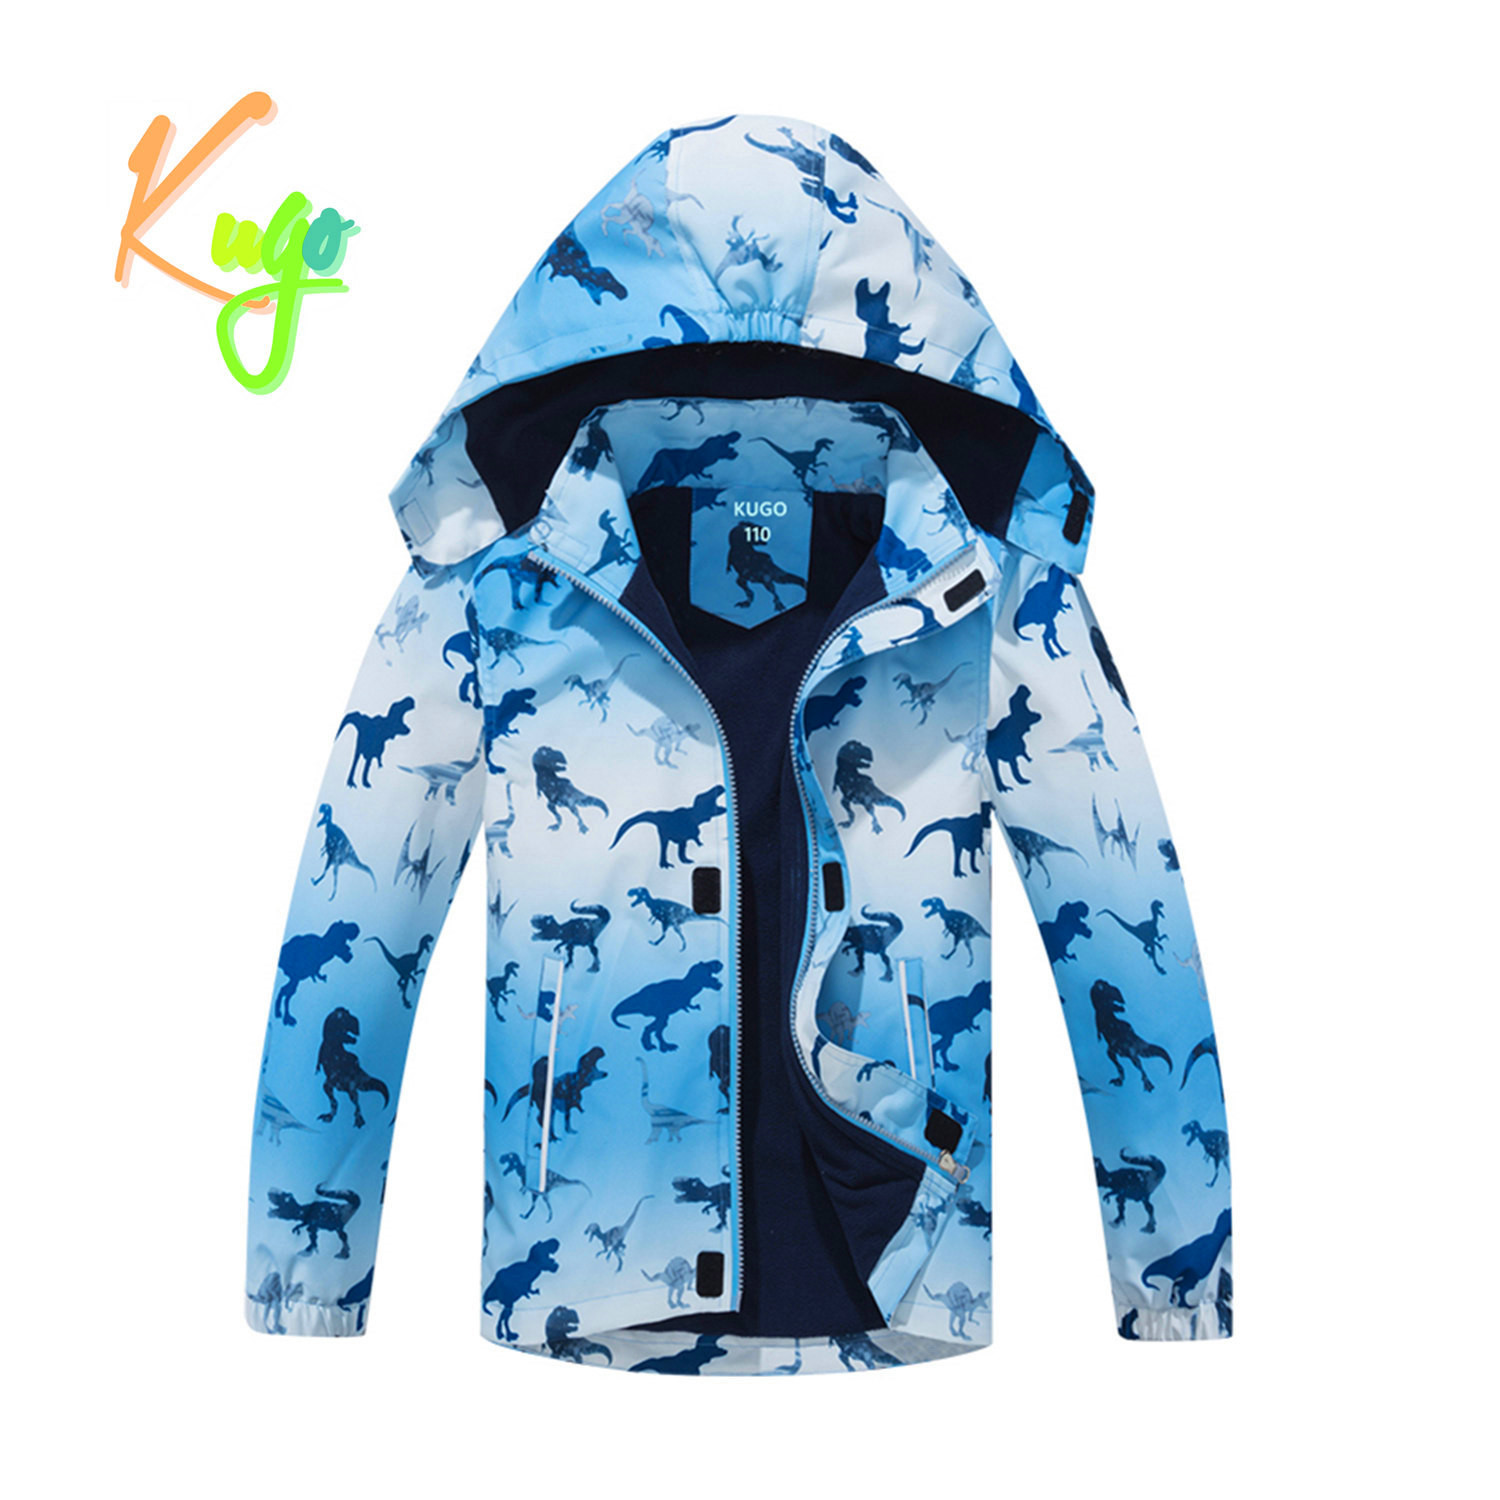 Chlapecká podzimní bunda, zateplená - KUGO B2839, světle modrá Barva: Modrá, Velikost: 98/104